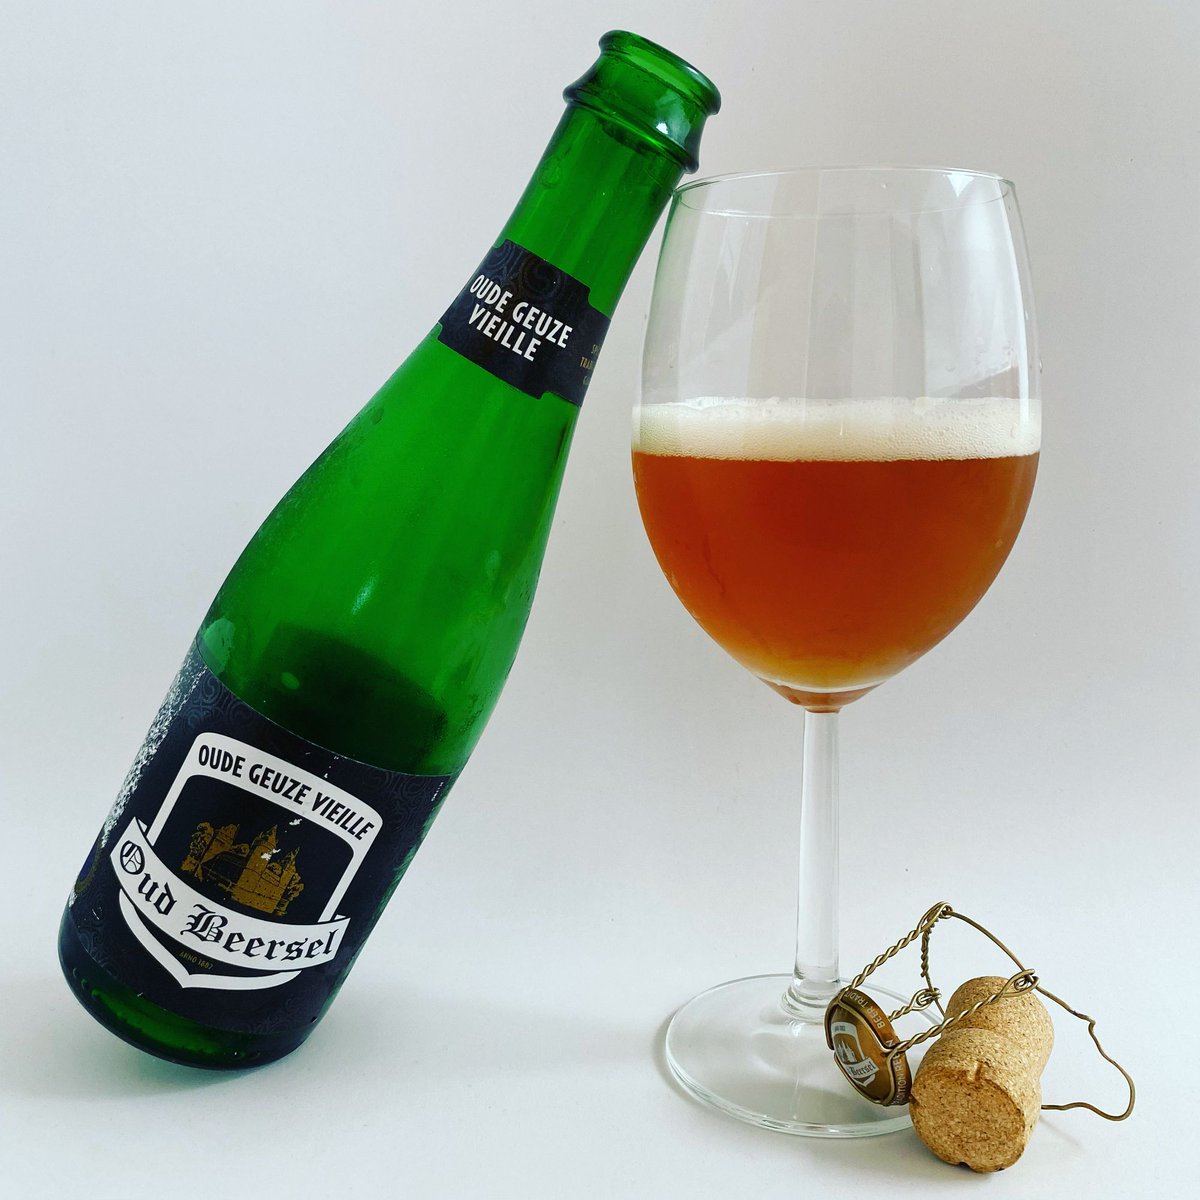 La Cerveza del Viernes: Oude Geuze Vieille by @OudBeersel Sabor de acidez moderada, muy refrescante y afrutado, ligero amargor y dulzor bien balanceados, final seco. Deliciosa